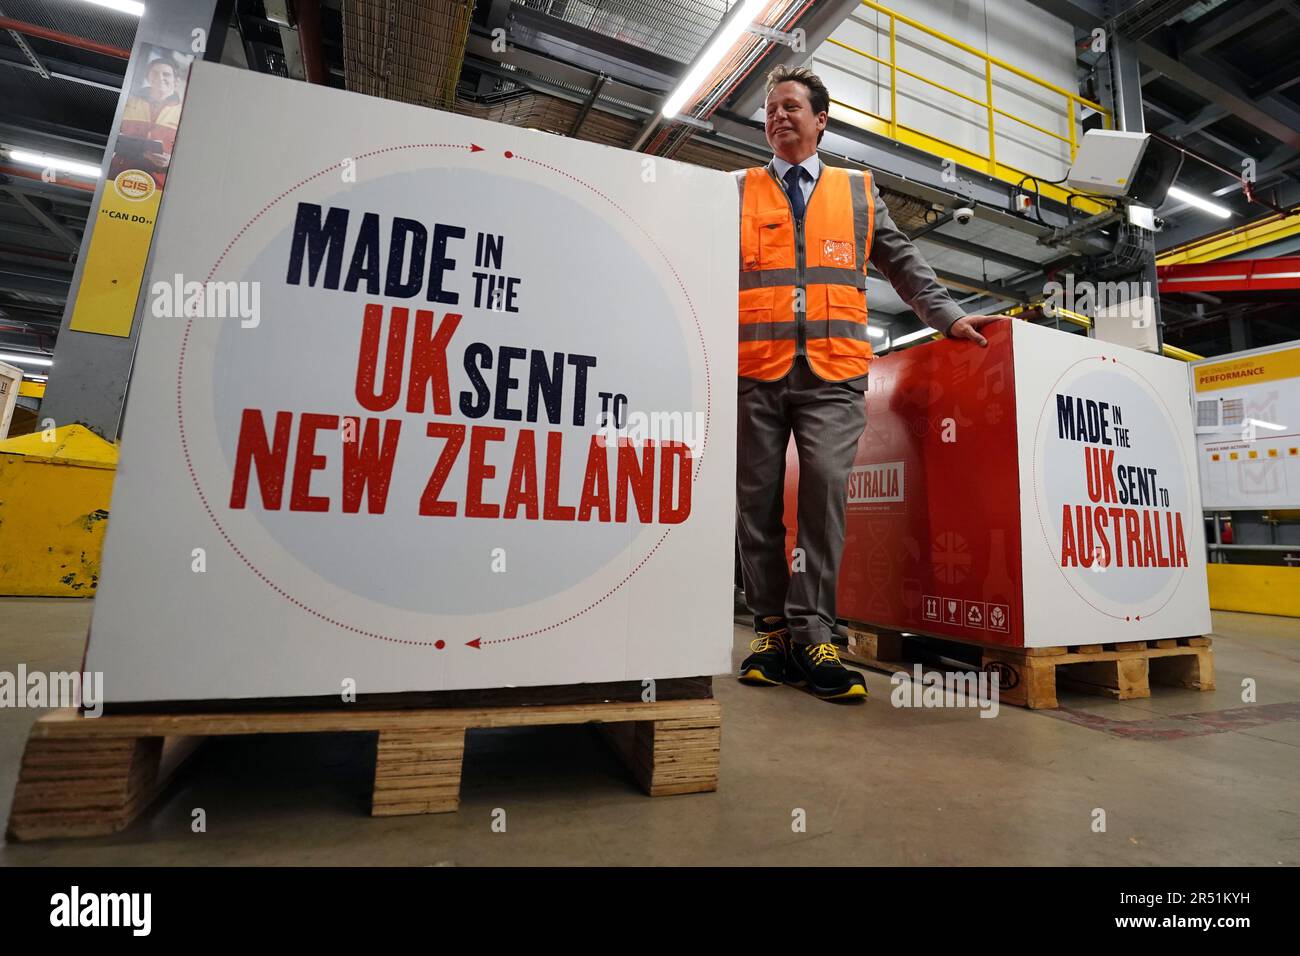 Handelsminister Nigel Huddleston fotografiert während seines Besuchs im DHL-Werk von Heathrow, da am Mittwoch die ersten Handelsgeschäfte des Vereinigten Königreichs nach dem Brexit mit Australien und Neuseeland in Kraft treten. Die Abkommen sind die ersten Handelsabkommen, die nach dem Brexit ausgehandelt wurden und in Kraft treten, nachdem das Vereinigte Königreich, Australien und Neuseeland ihre innerstaatlichen Ratifizierungsprozesse abgeschlossen haben. Bilddatum: Mittwoch, 31. Mai 2023. Stockfoto